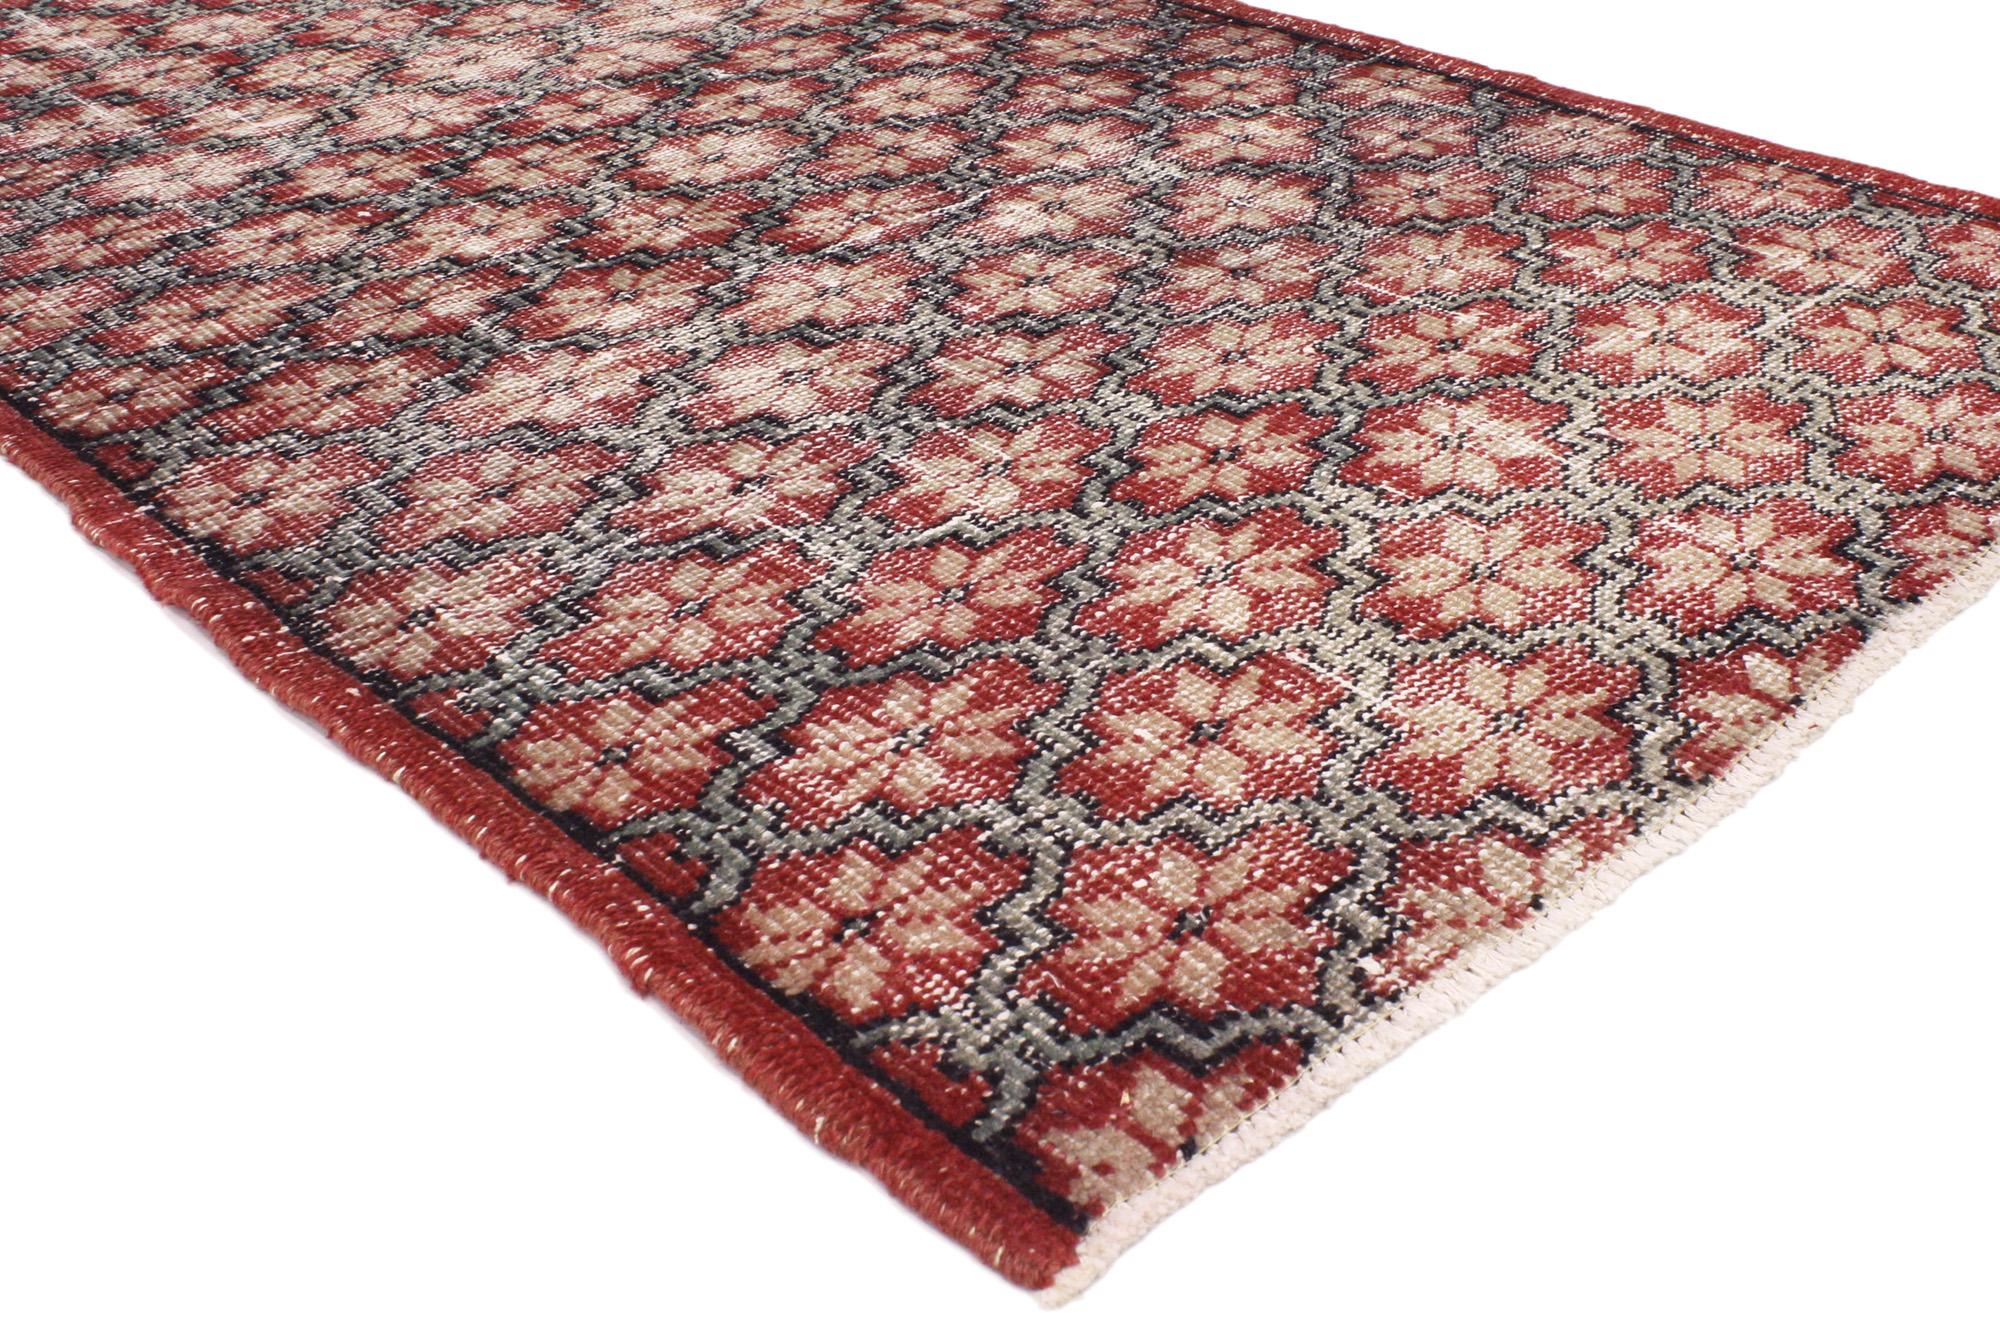 51937 Türkischer Sivas-Teppich im Vintage-Stil, 03'03 x 06'09. Die türkischen Sivas-Teppiche Zeki Müren sind nach dem angesehenen türkischen Sänger Zeki Müren benannt und stammen aus der türkischen Region Sivas. Diese Teppiche, die für ihre